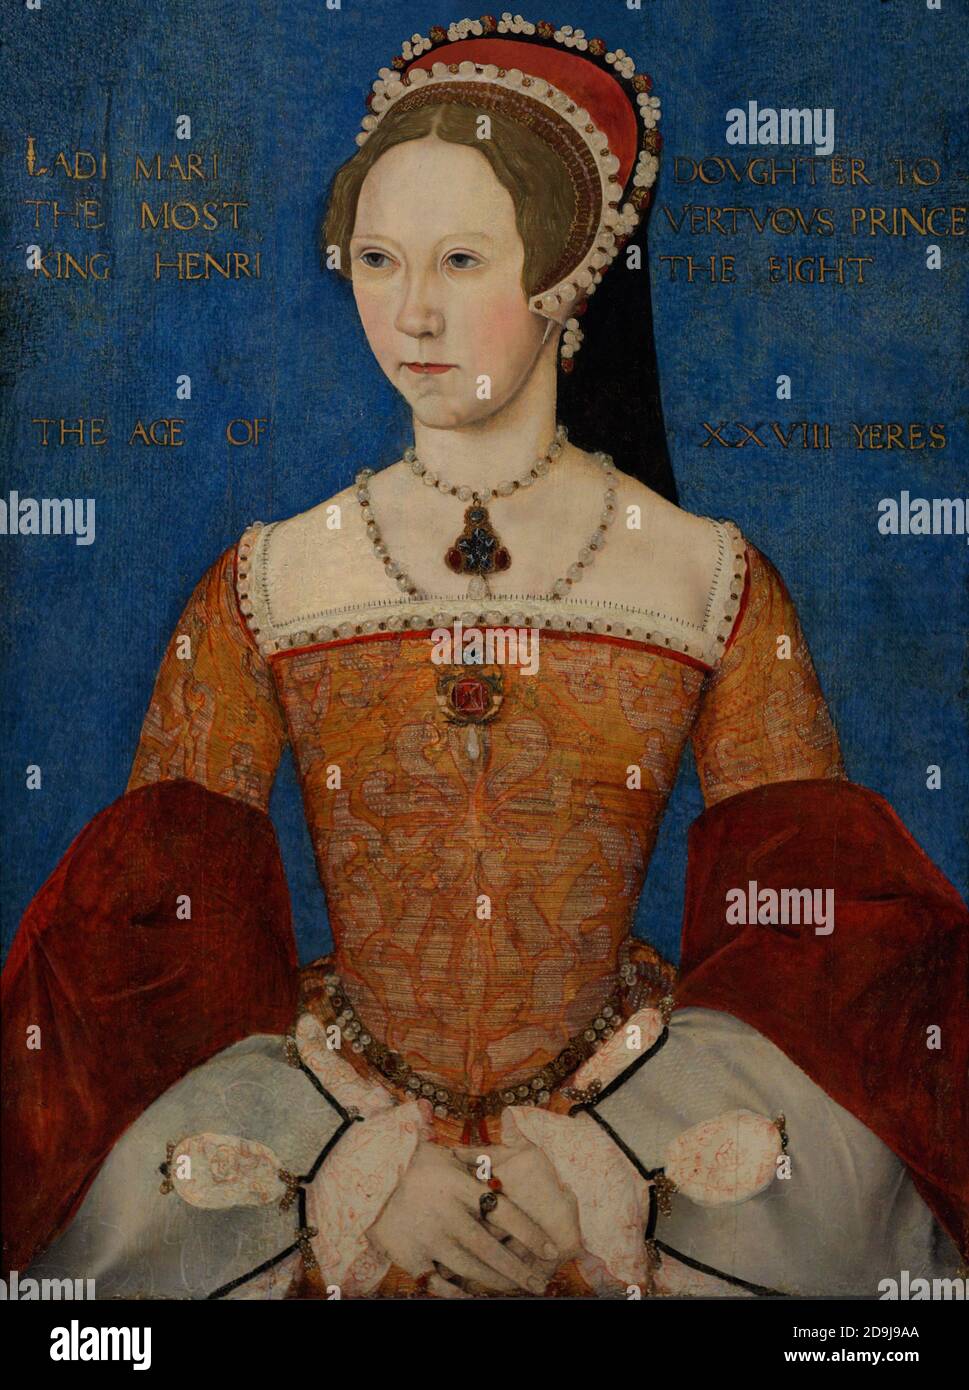 Reina María I de Inglaterra (1516-1558). La primera monarca femenina de Inglaterra. Retrato del Maestro John. Aceite en el panel, 1544. Galería Nacional de Retratos. Londres, Inglaterra, Reino Unido. Foto de stock